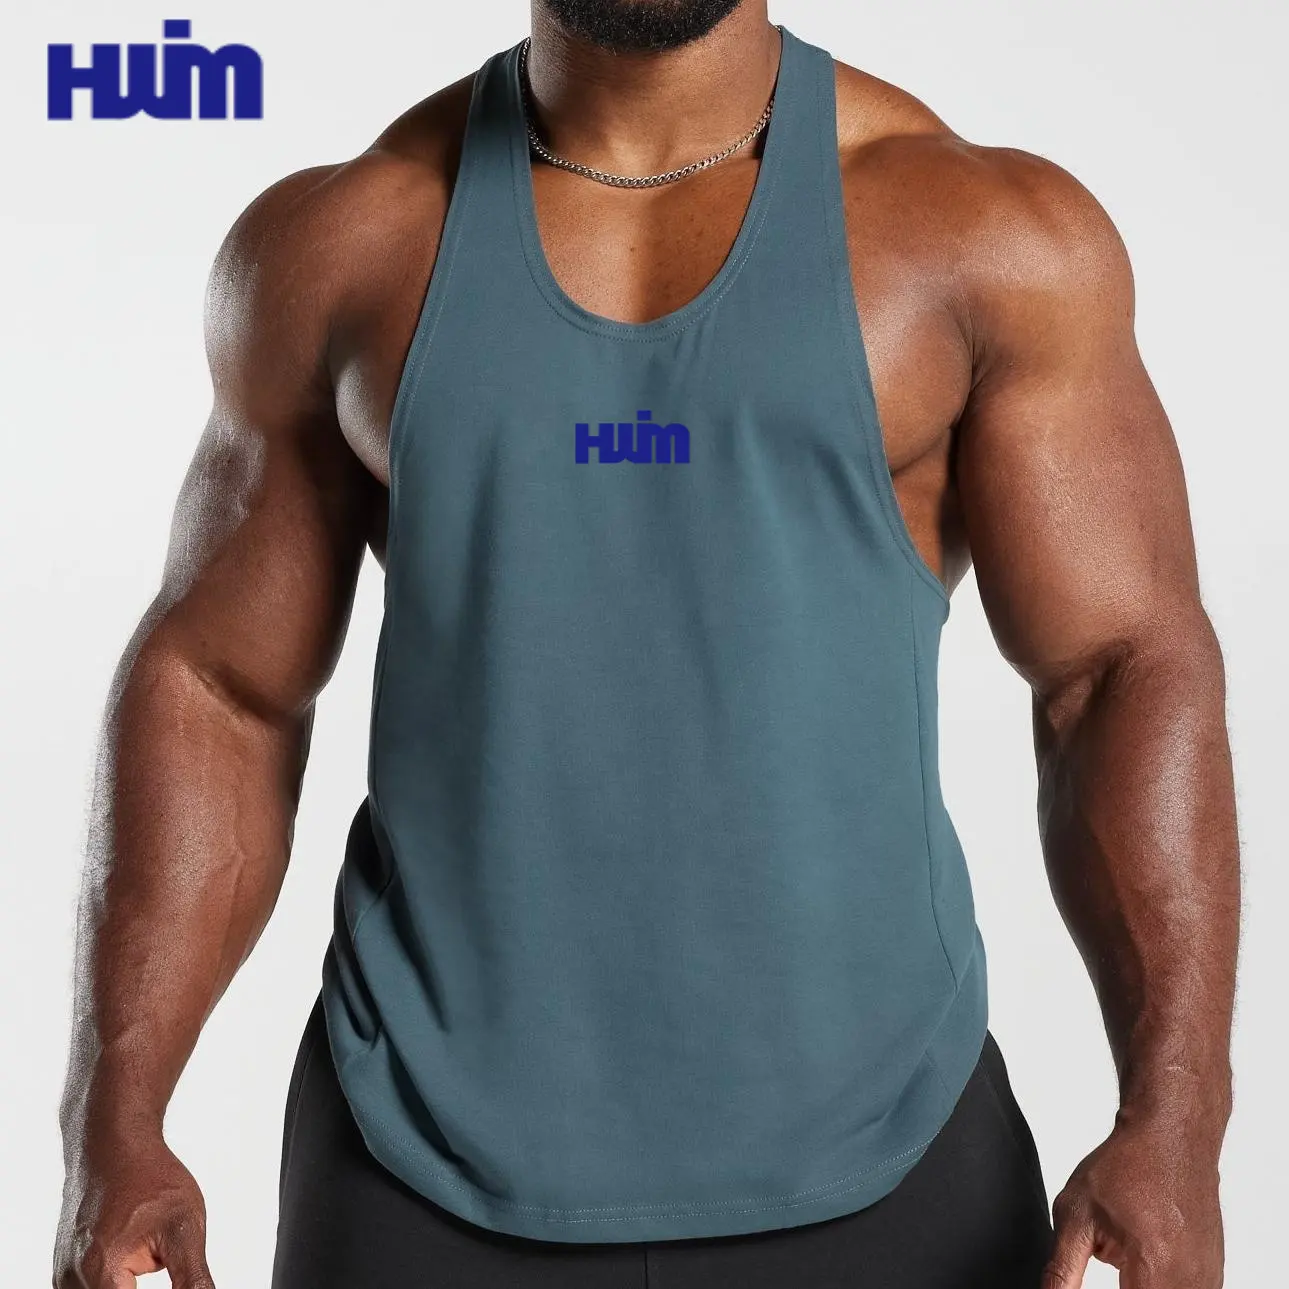 Toptan özel Logo Y geri üst kolsuz yelek Fitness salonu nefes Stringer Tank Top vücut geliştirme erkekler için erkek spor kıyafet